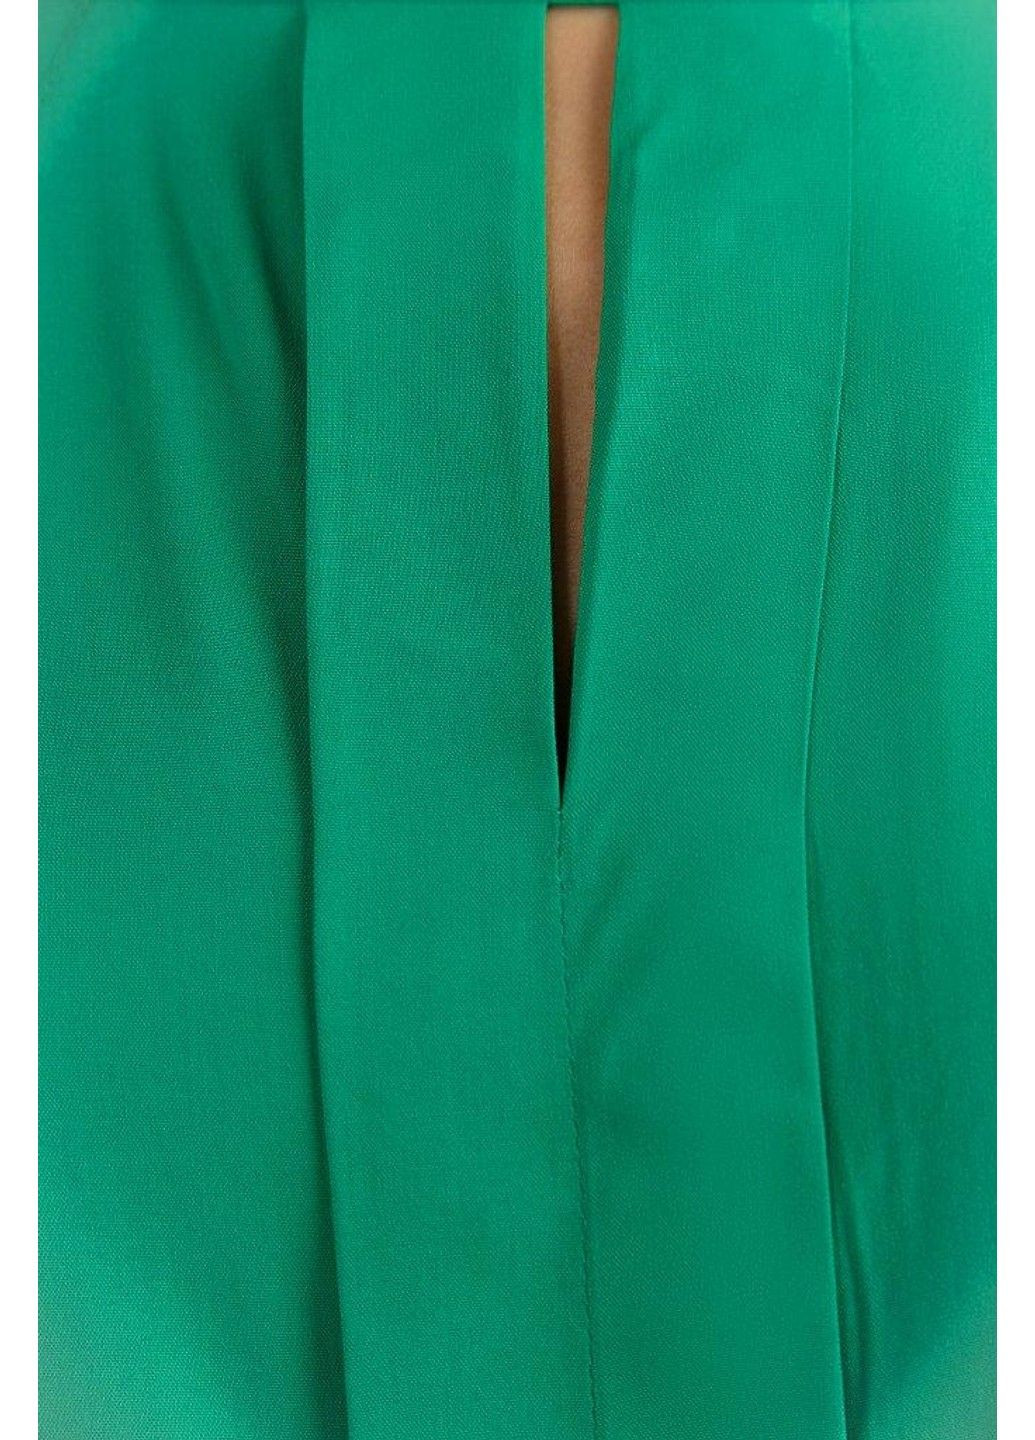 Зеленая летняя блузка s19-11099-500 Finn Flare